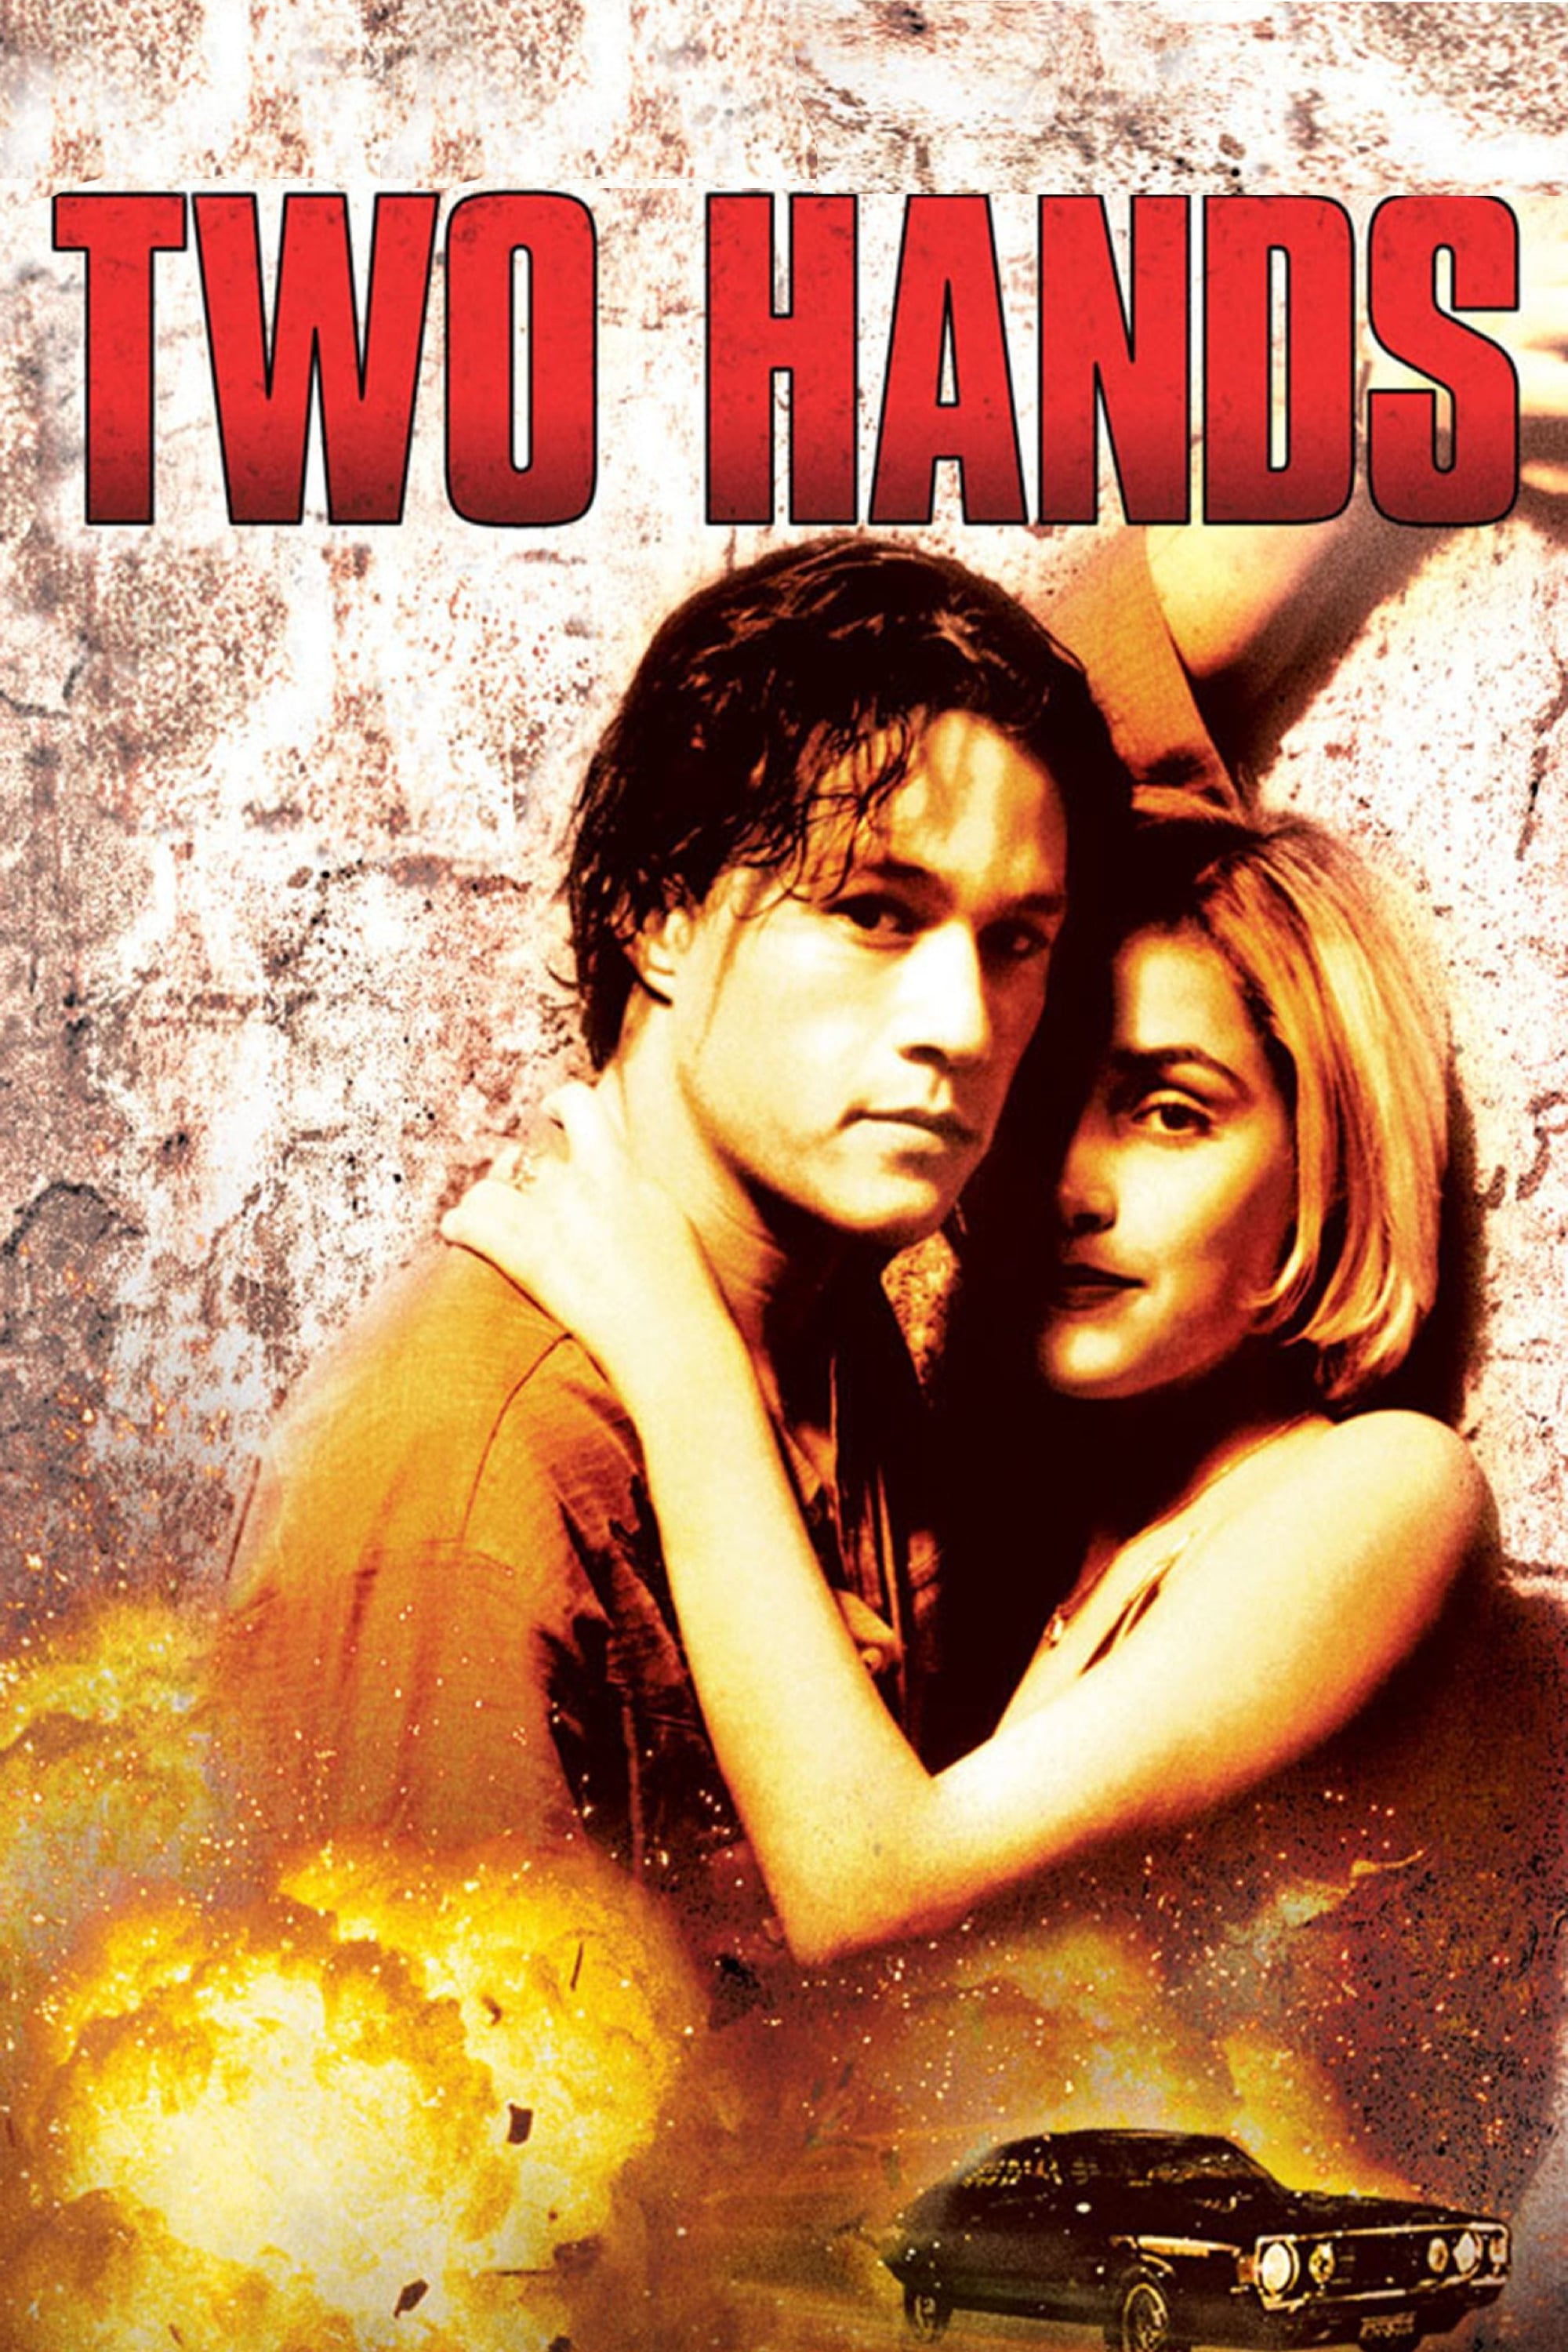 Две ръце